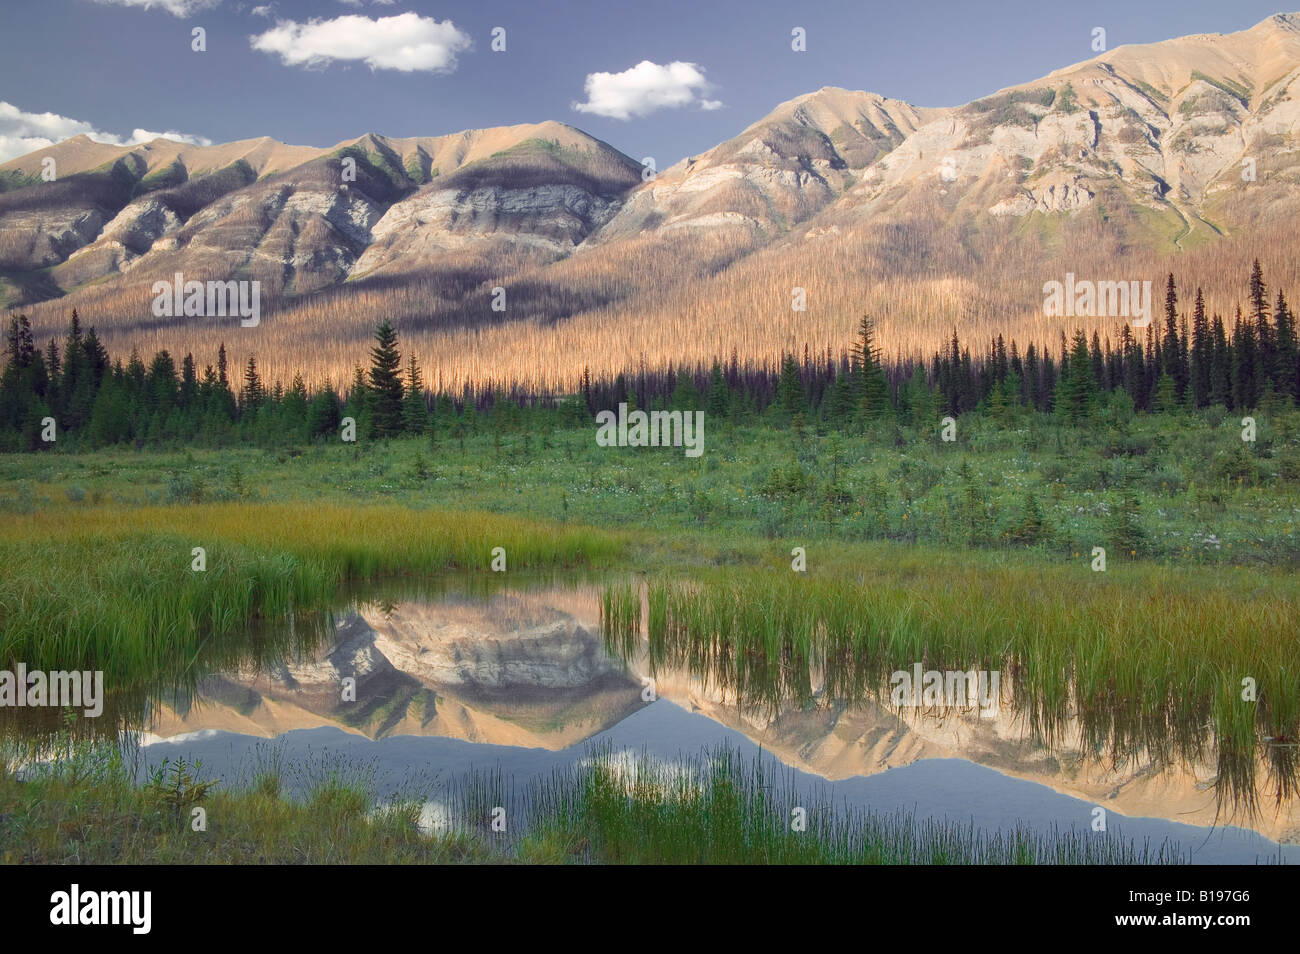 Reflet de Hawk Ridge dans le petit étang, le Parc National de Kootenay, Colombie-Britannique, Canada Banque D'Images